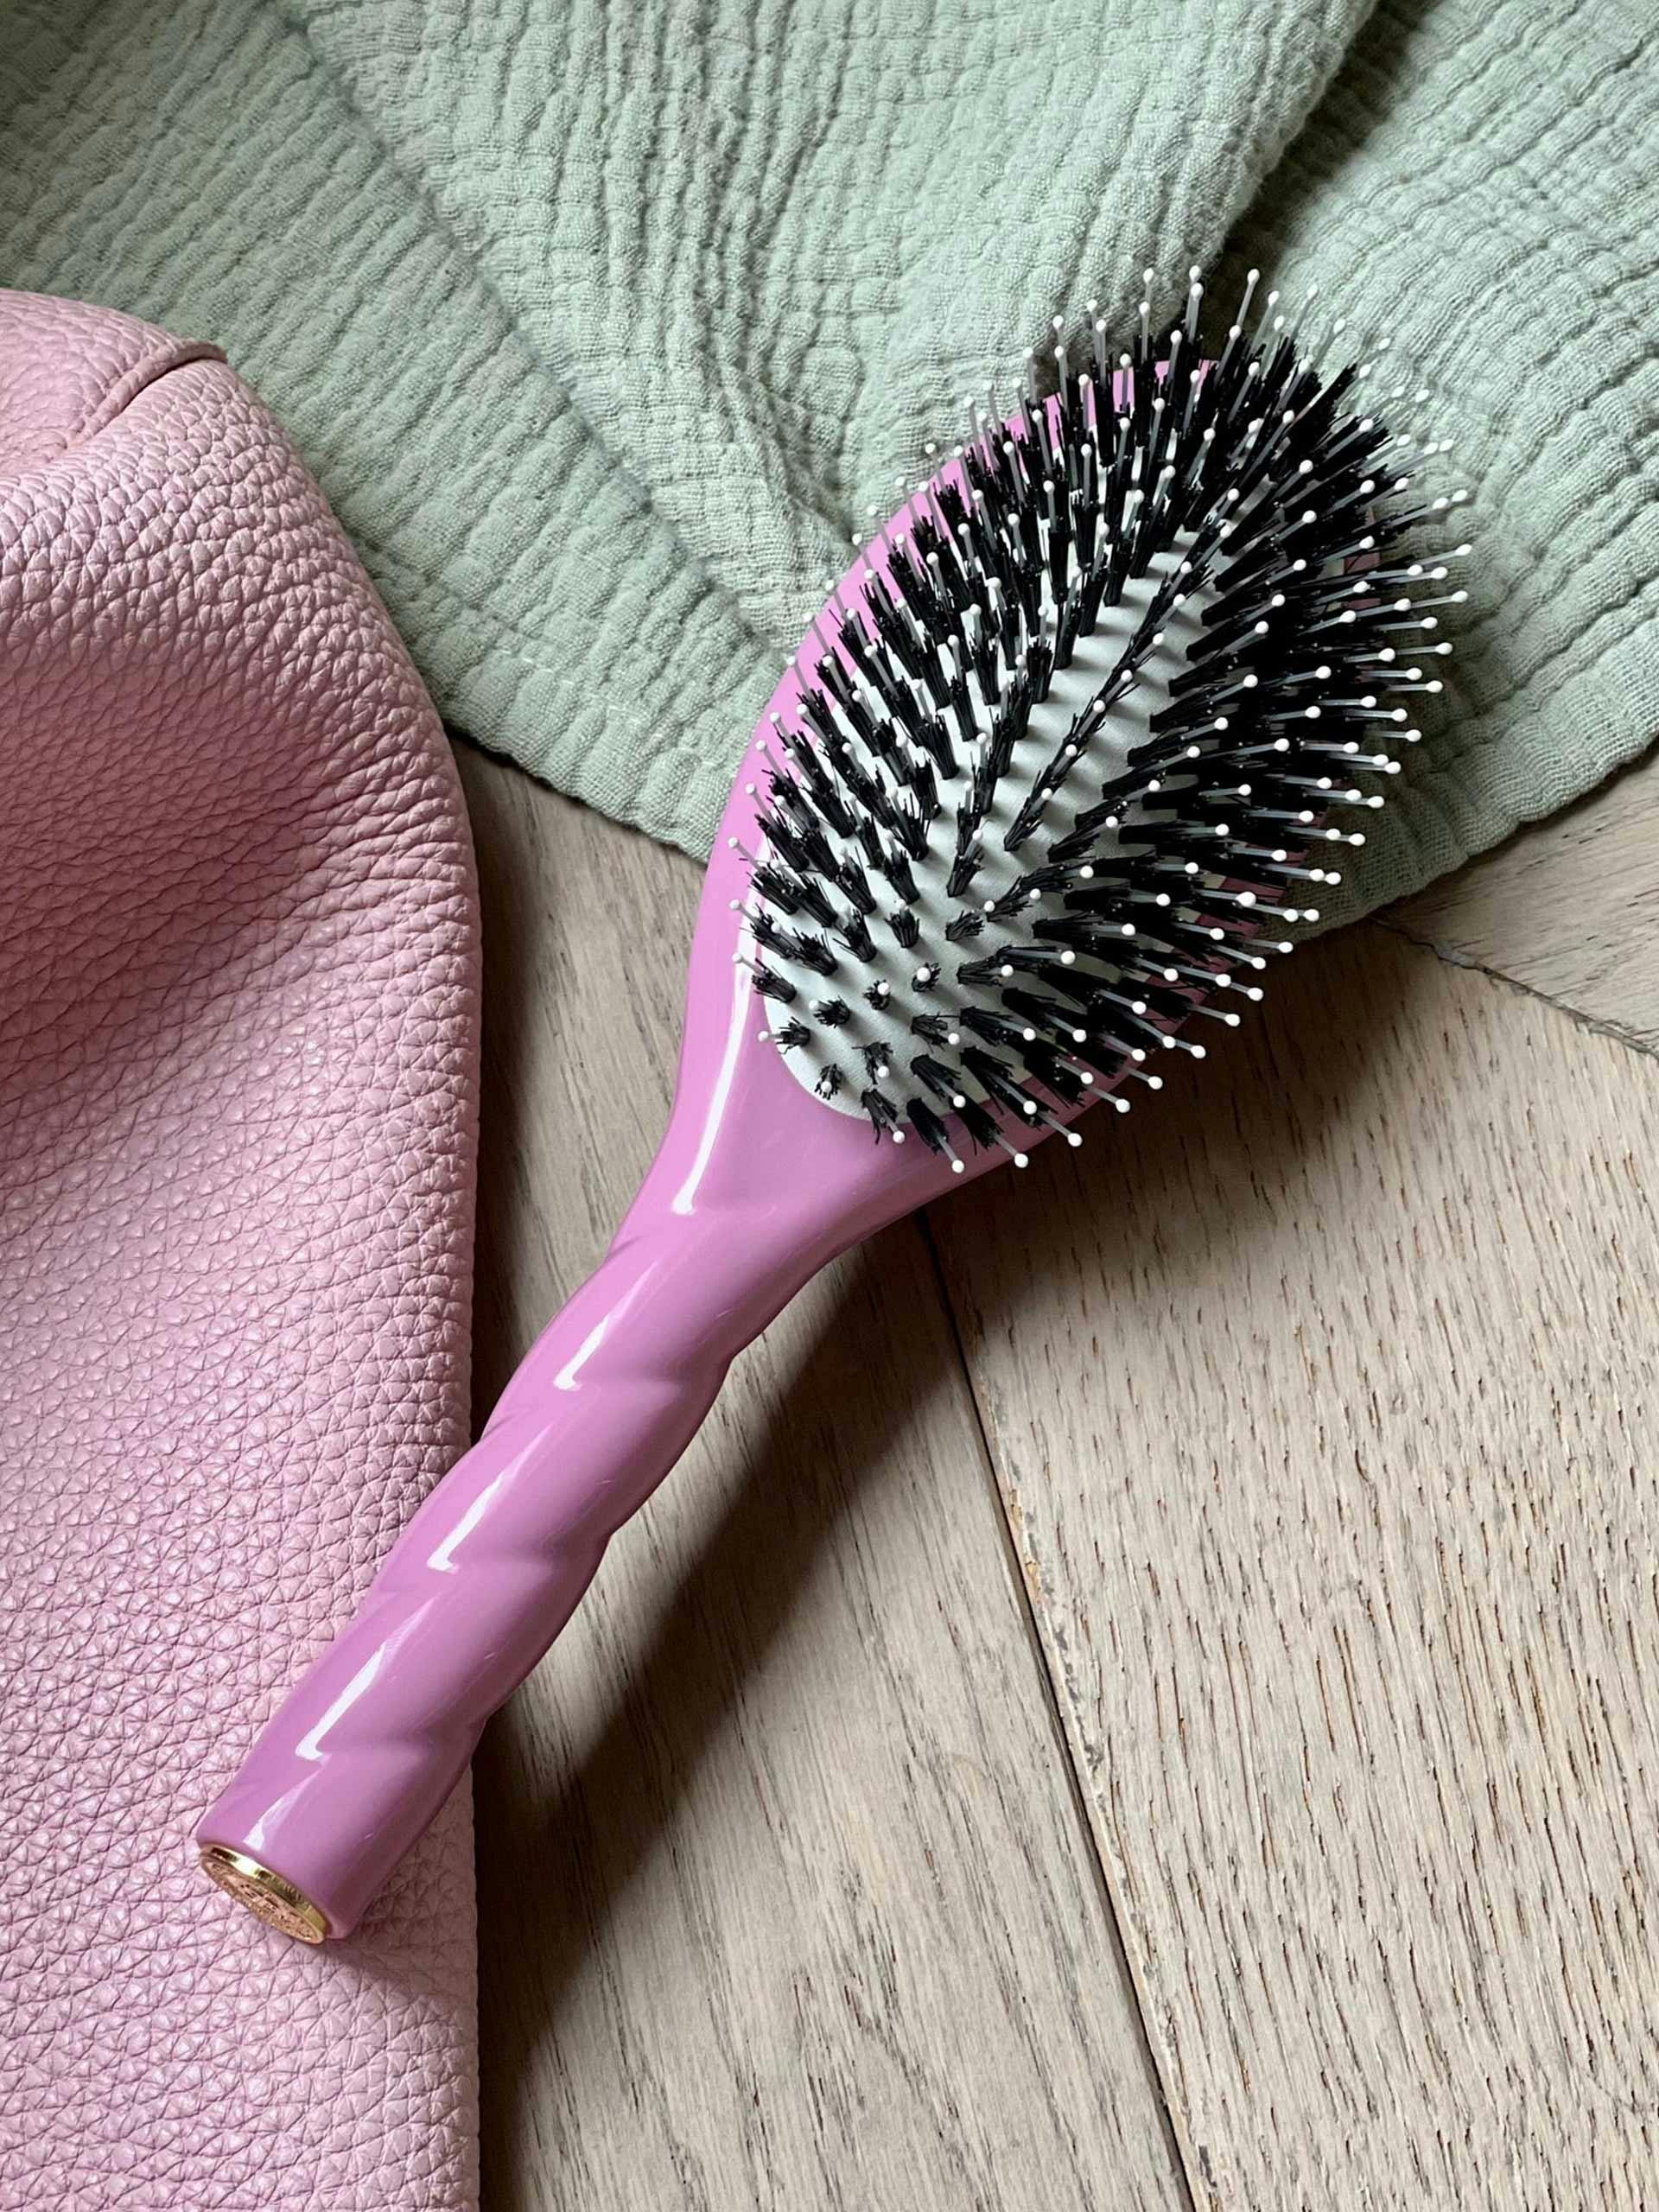 Soft hair brush